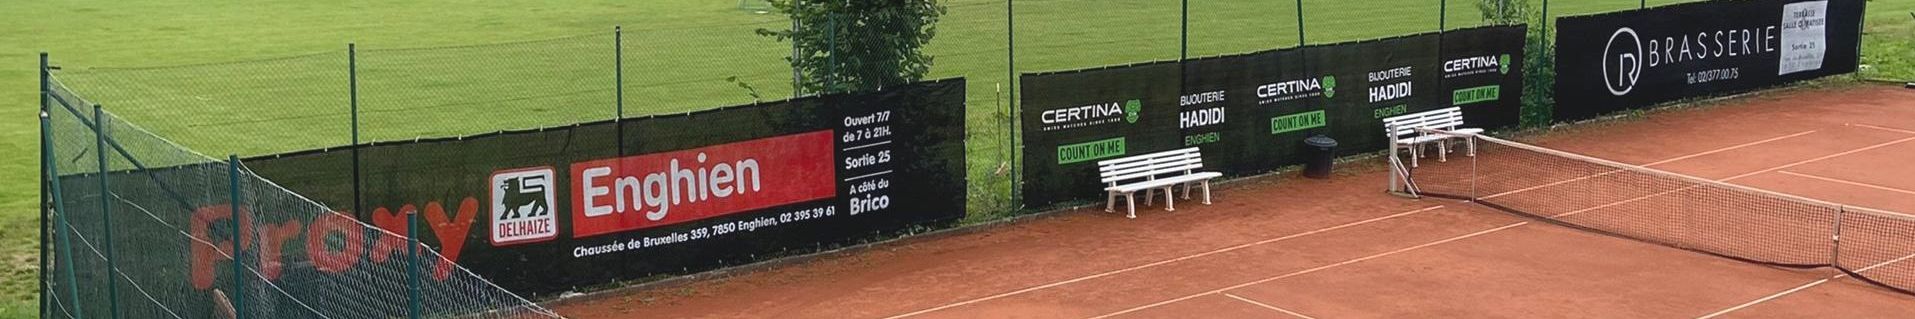 Tennis Enghien - sponsors